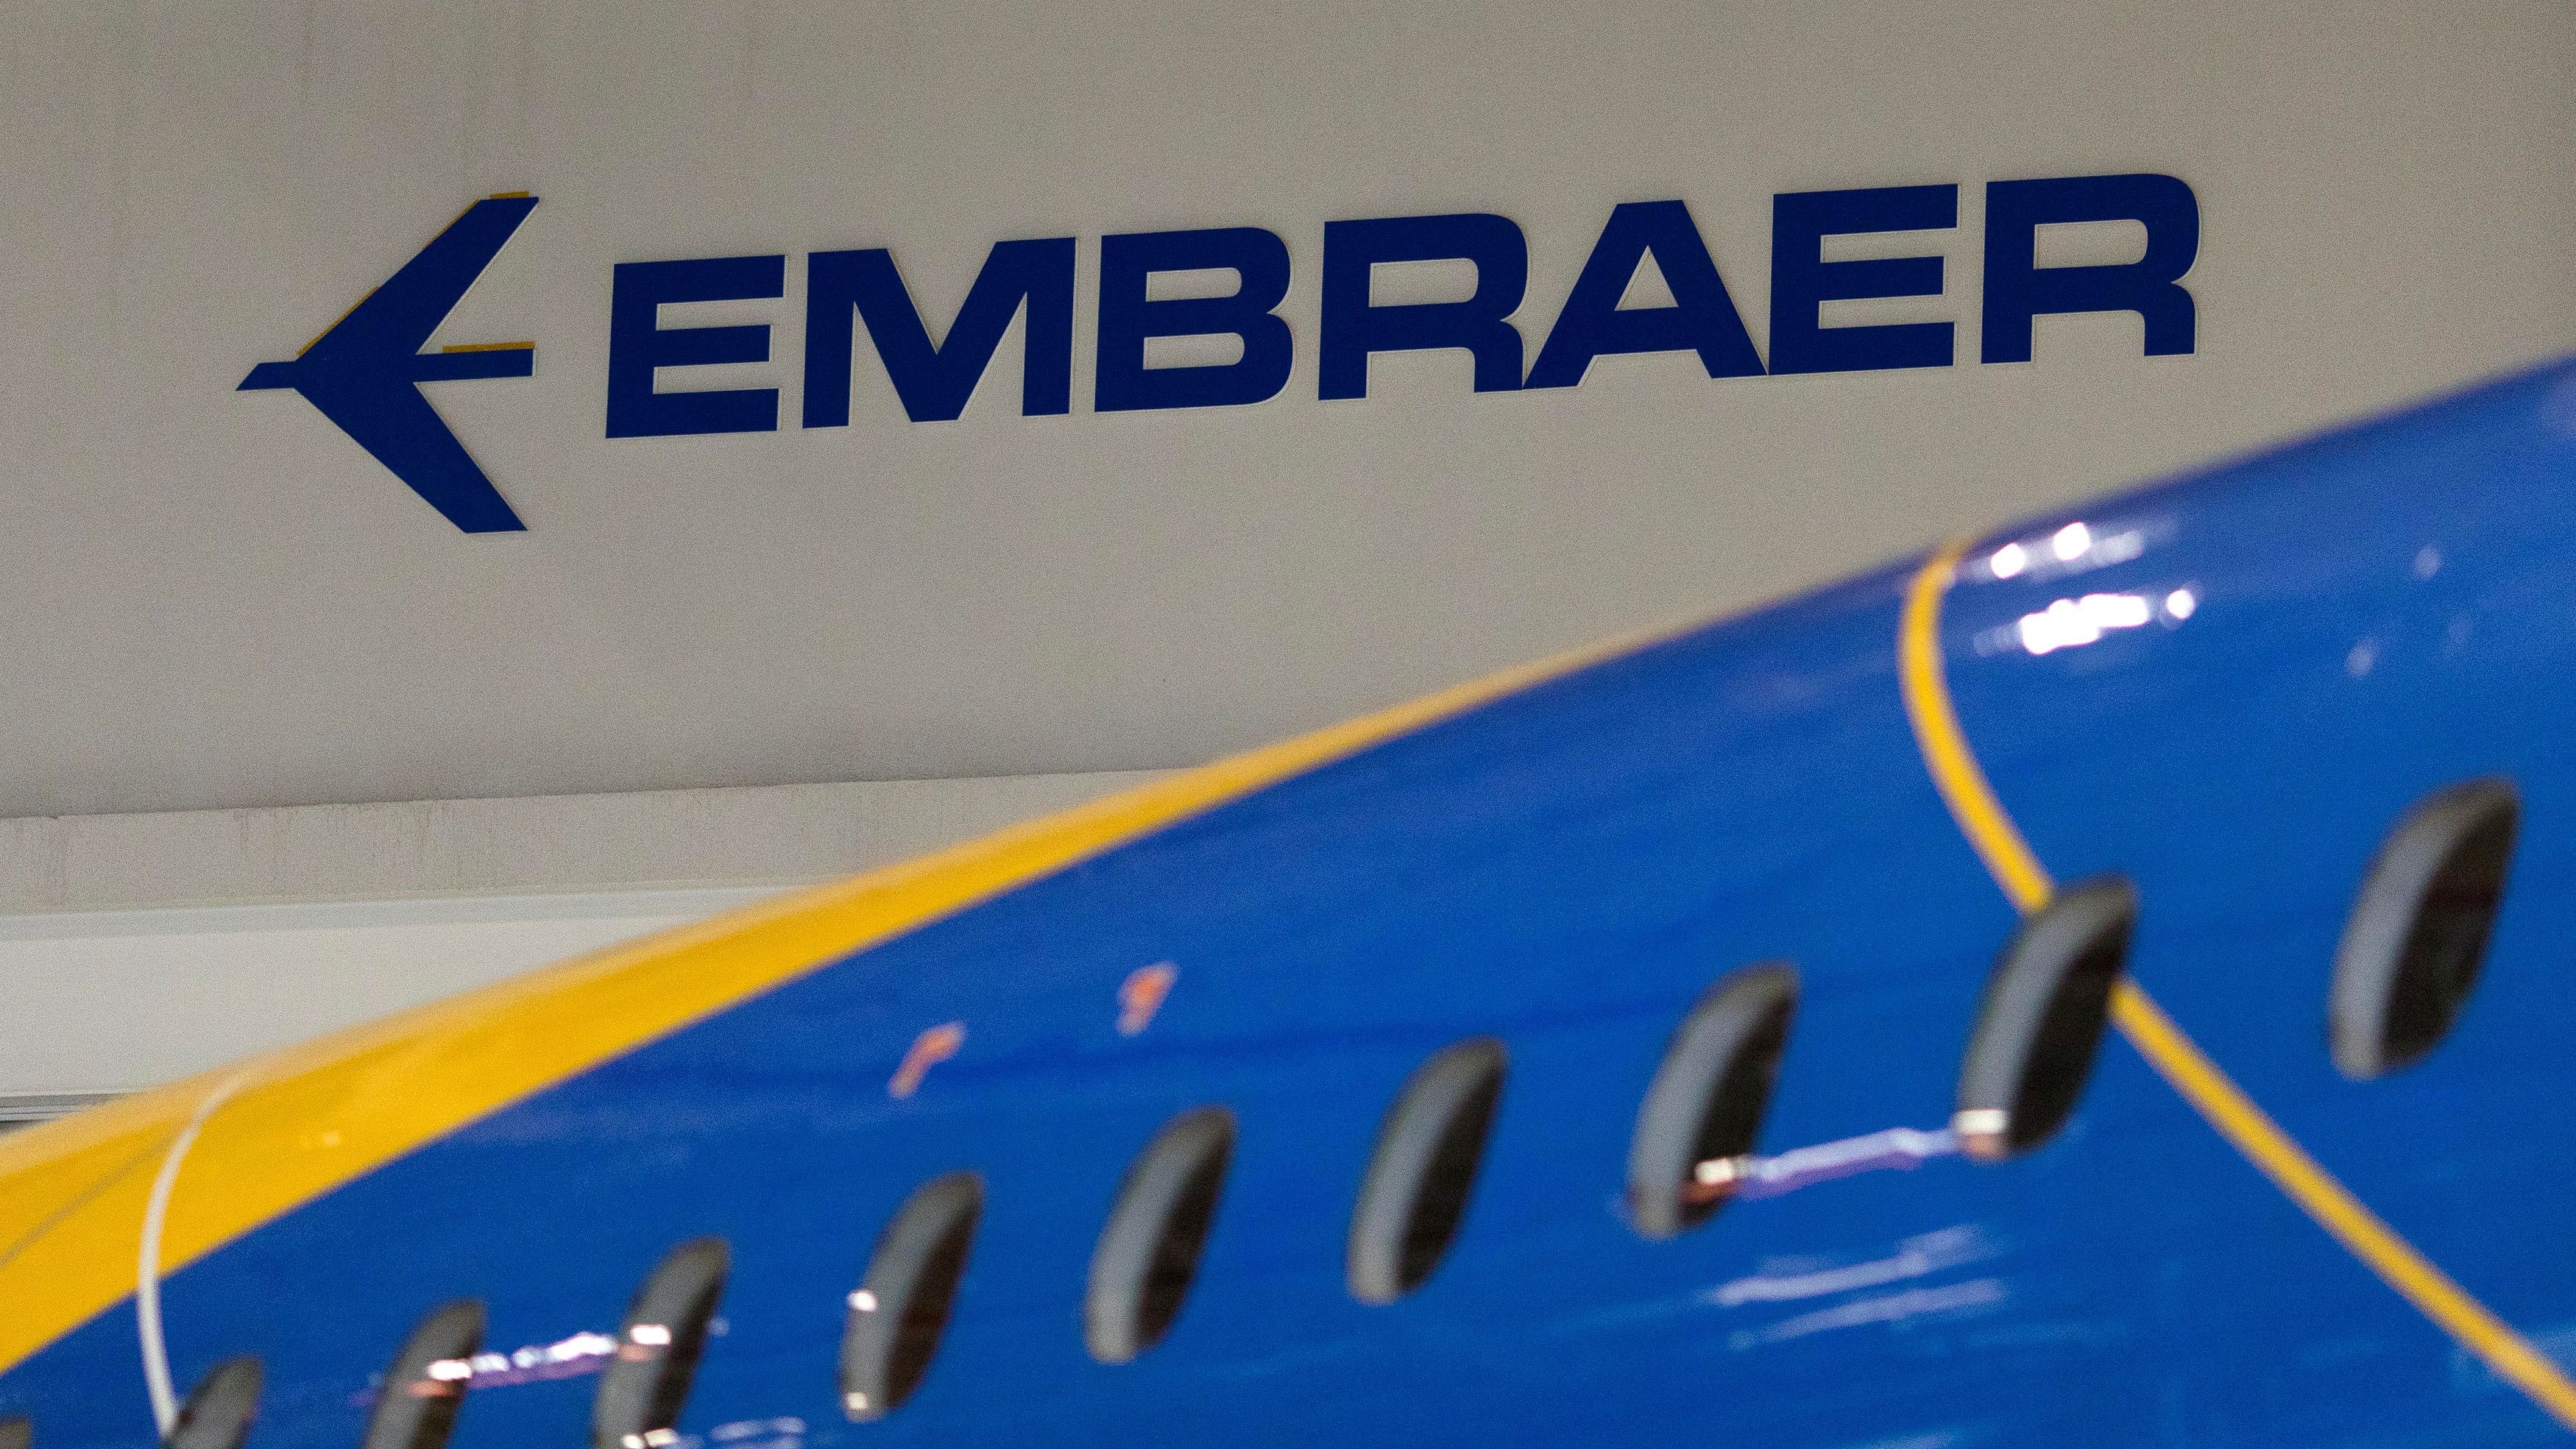 <div class="paragraphs"><p> The logo of Brazilian planemaker Embraer SA.</p></div>